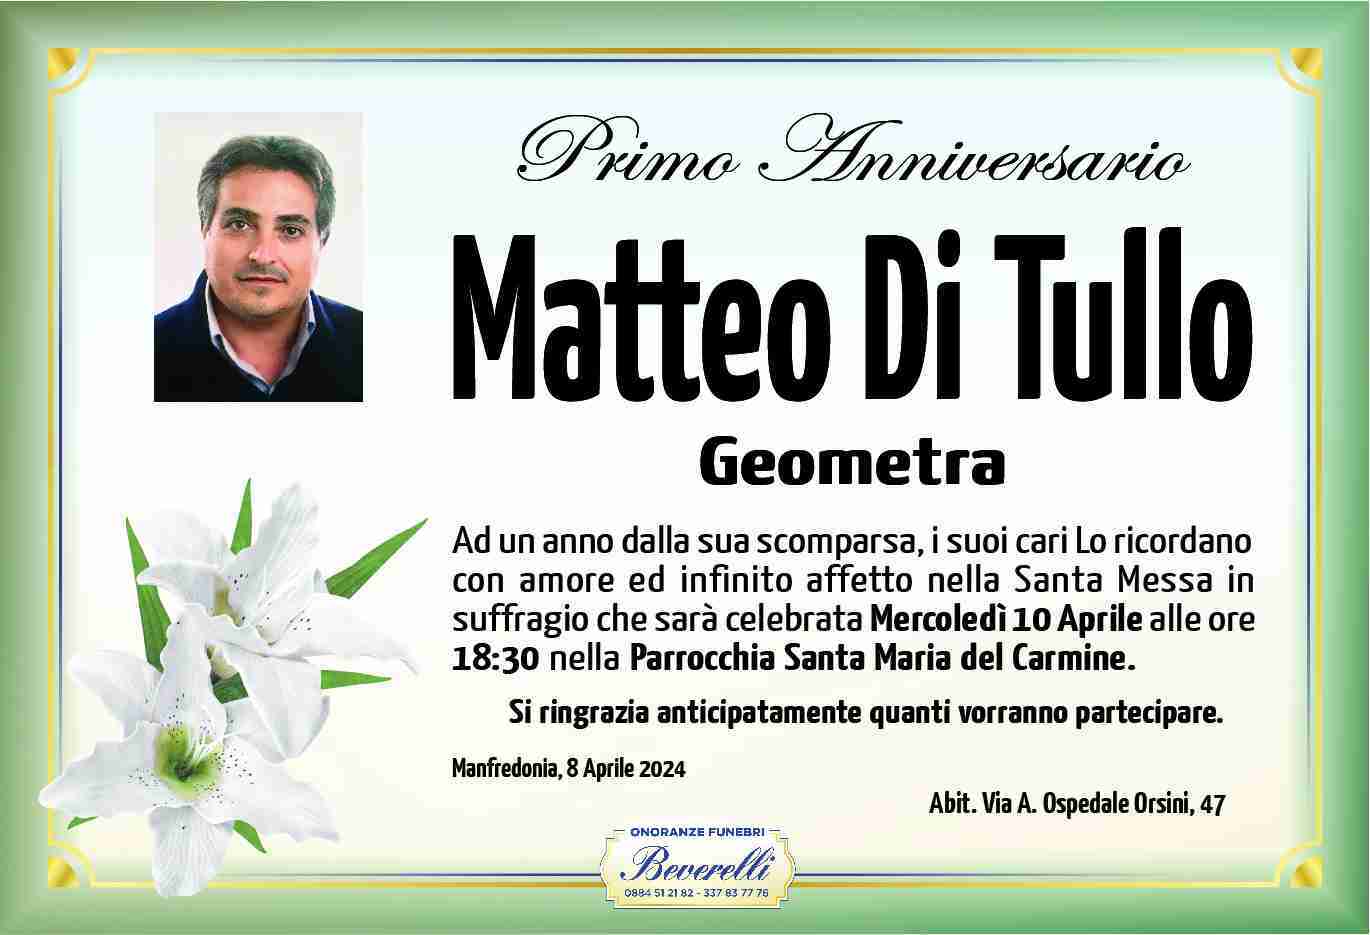 Matteo Di Tullo